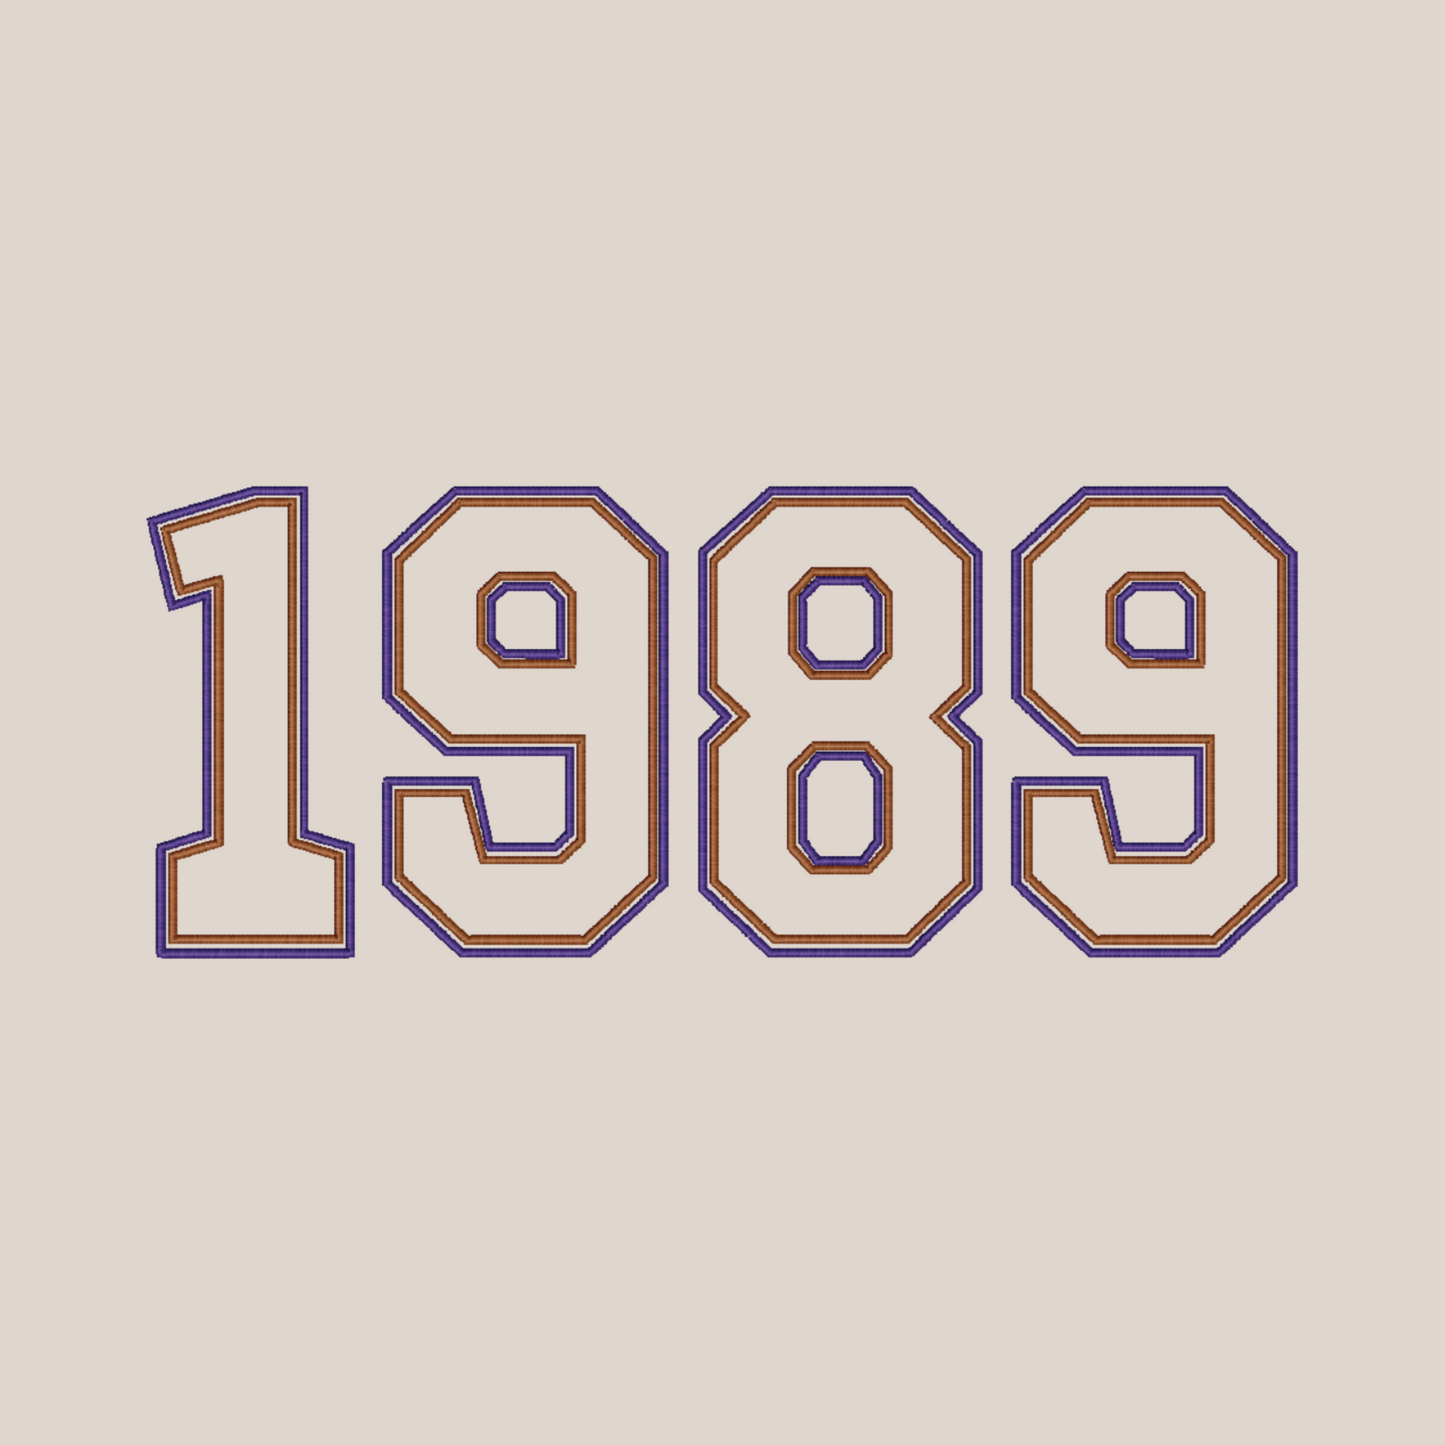 1989 Embroidered Sweatshirt